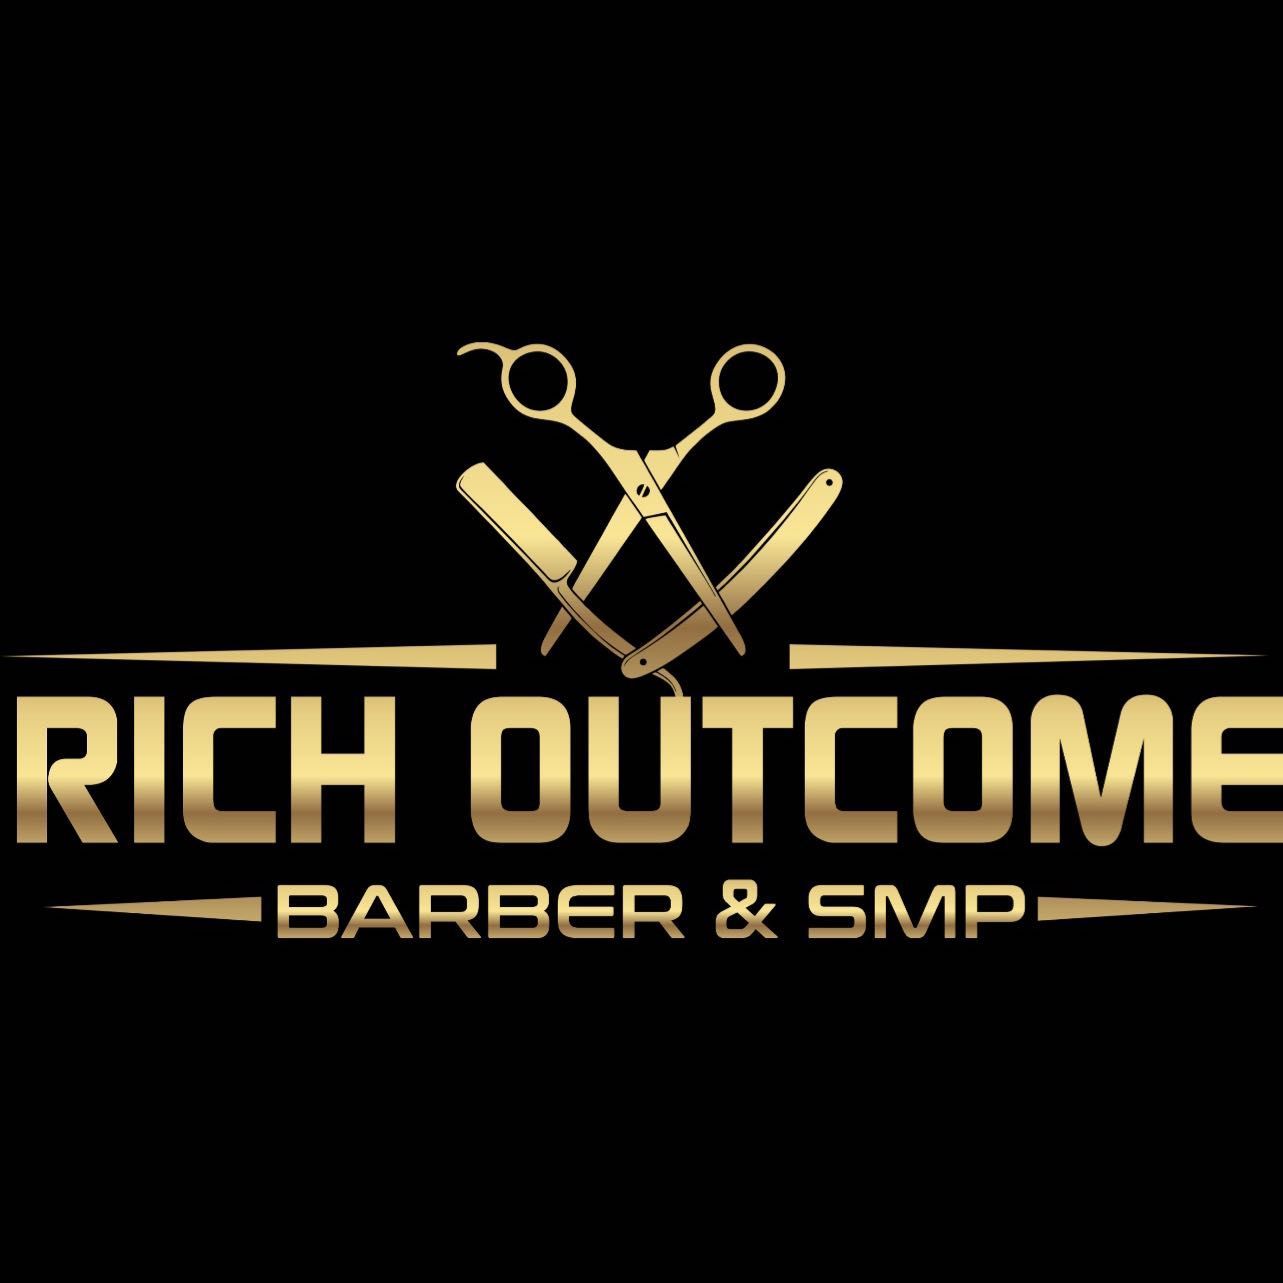 Richoutcome  Barber & smp, 4149 W Pico Blvd, 101, Los Angeles, 90019